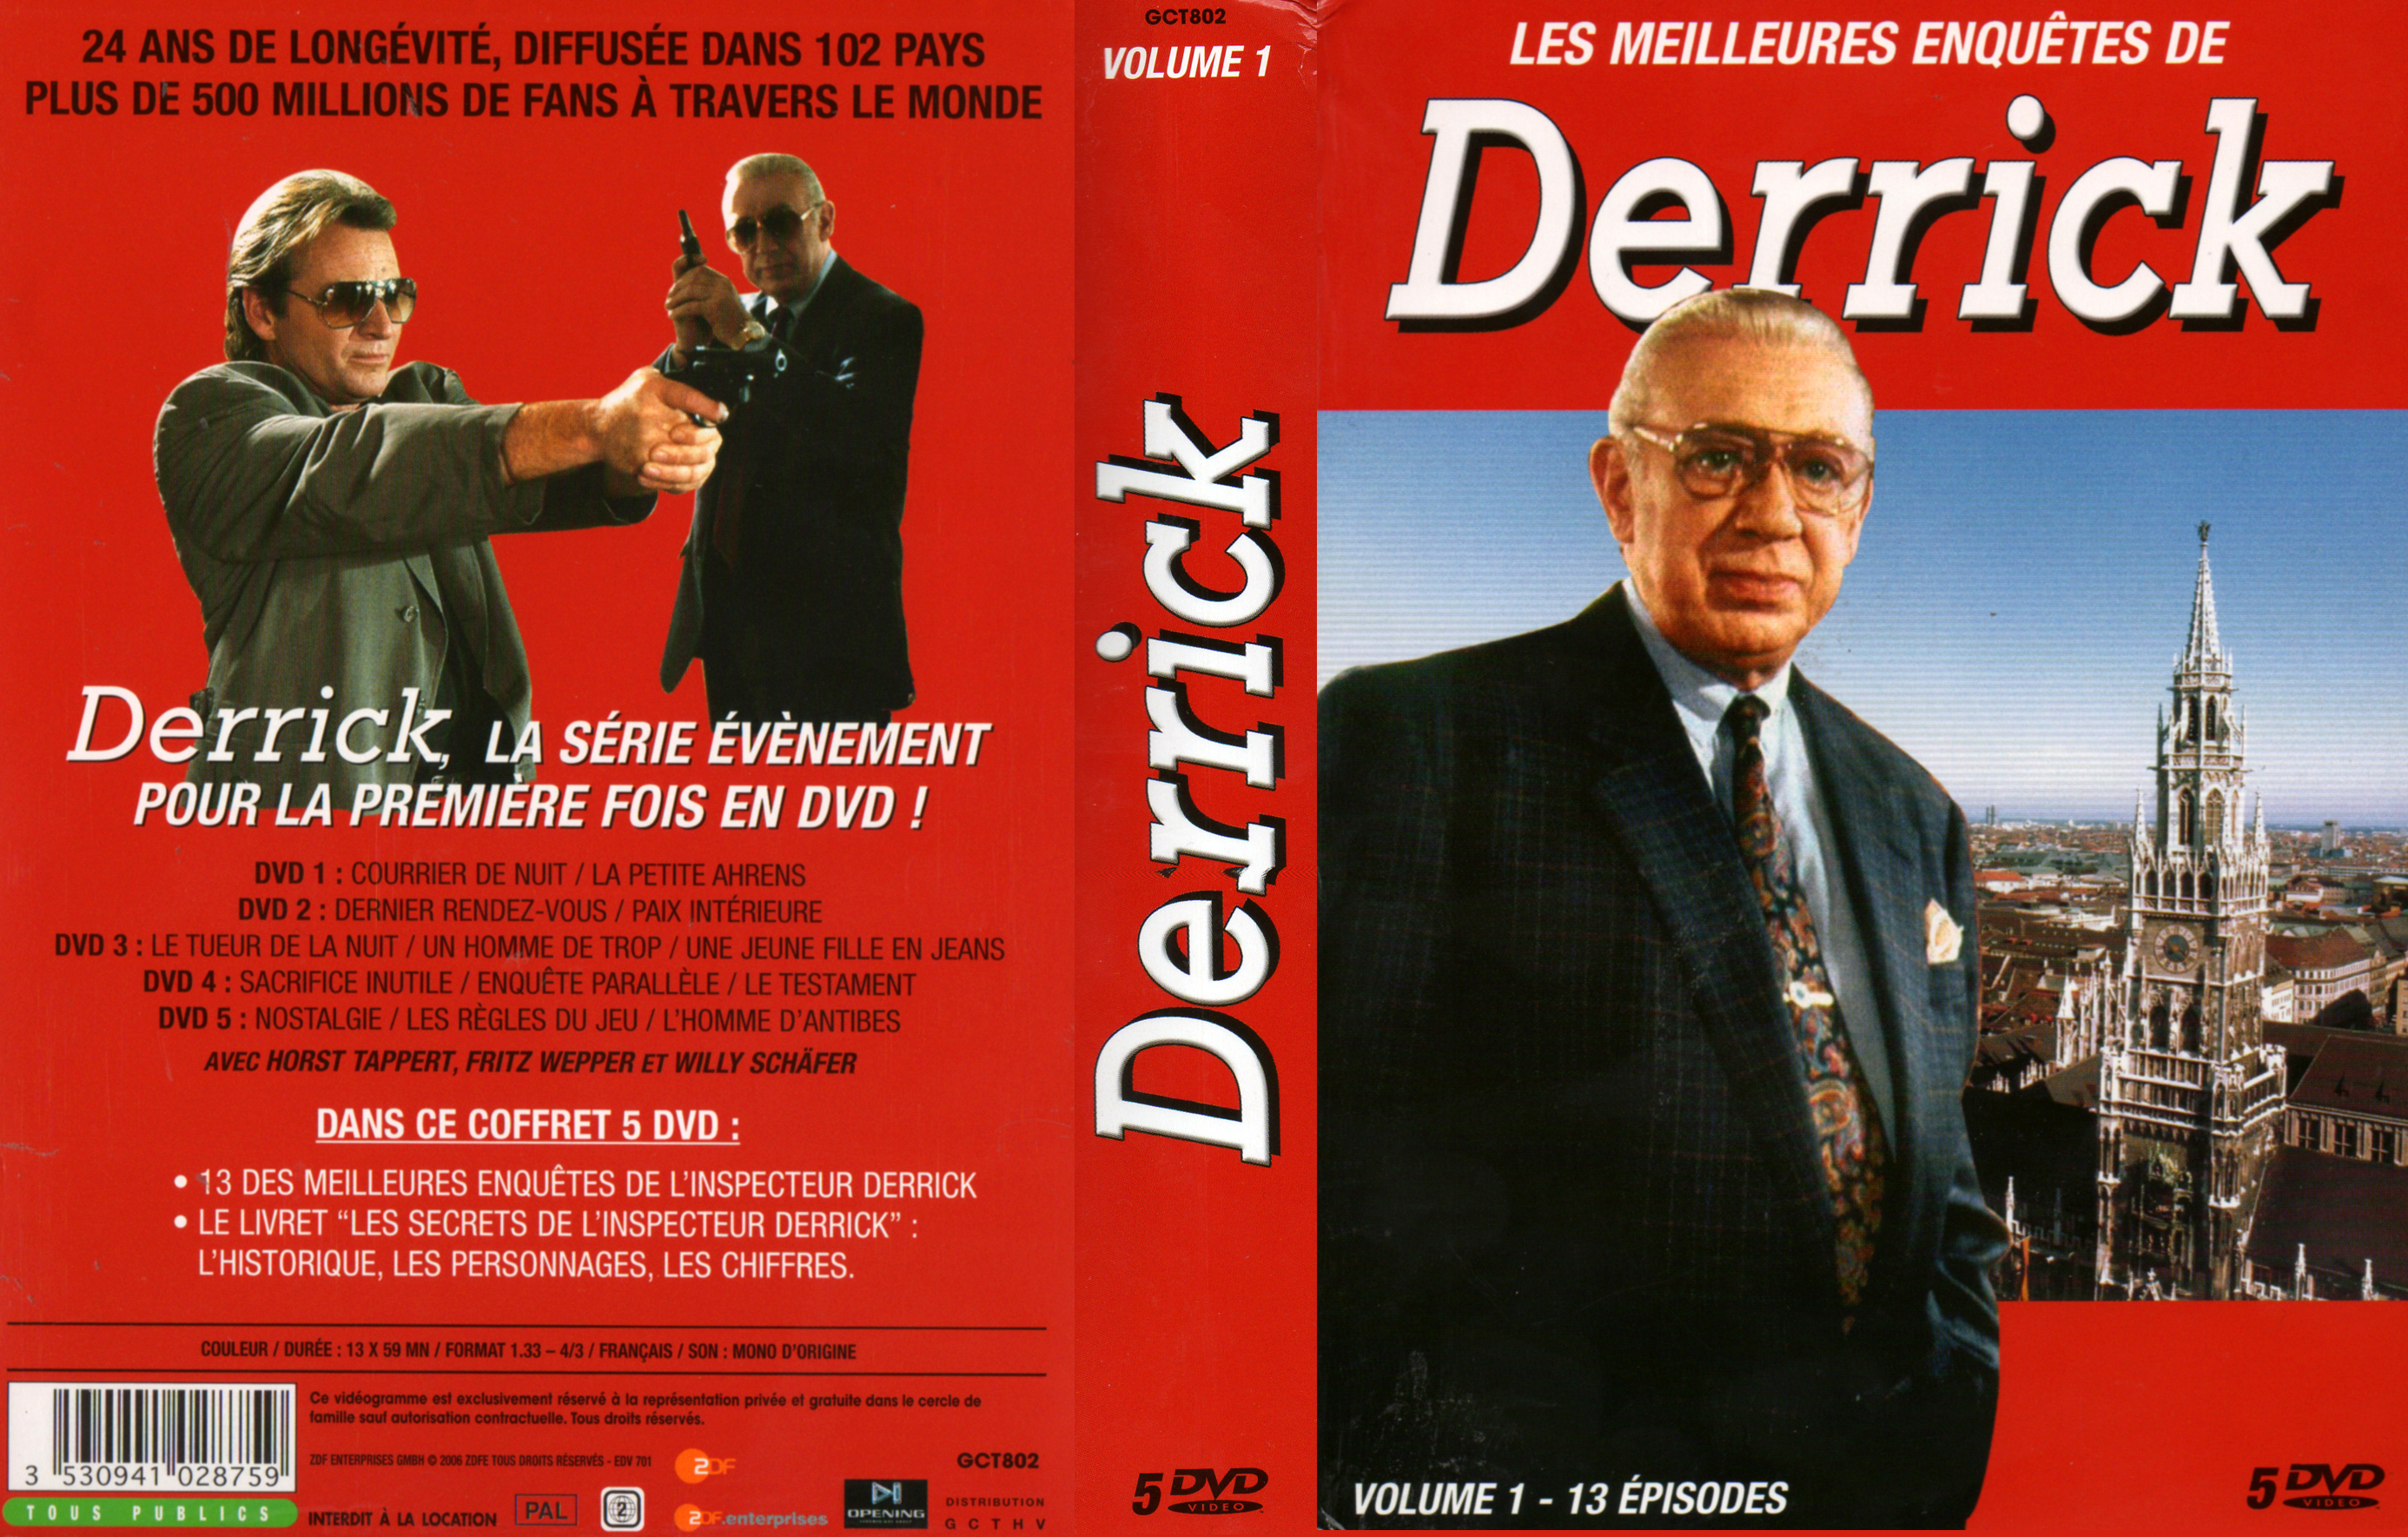 Jaquette DVD Derrick vol 01